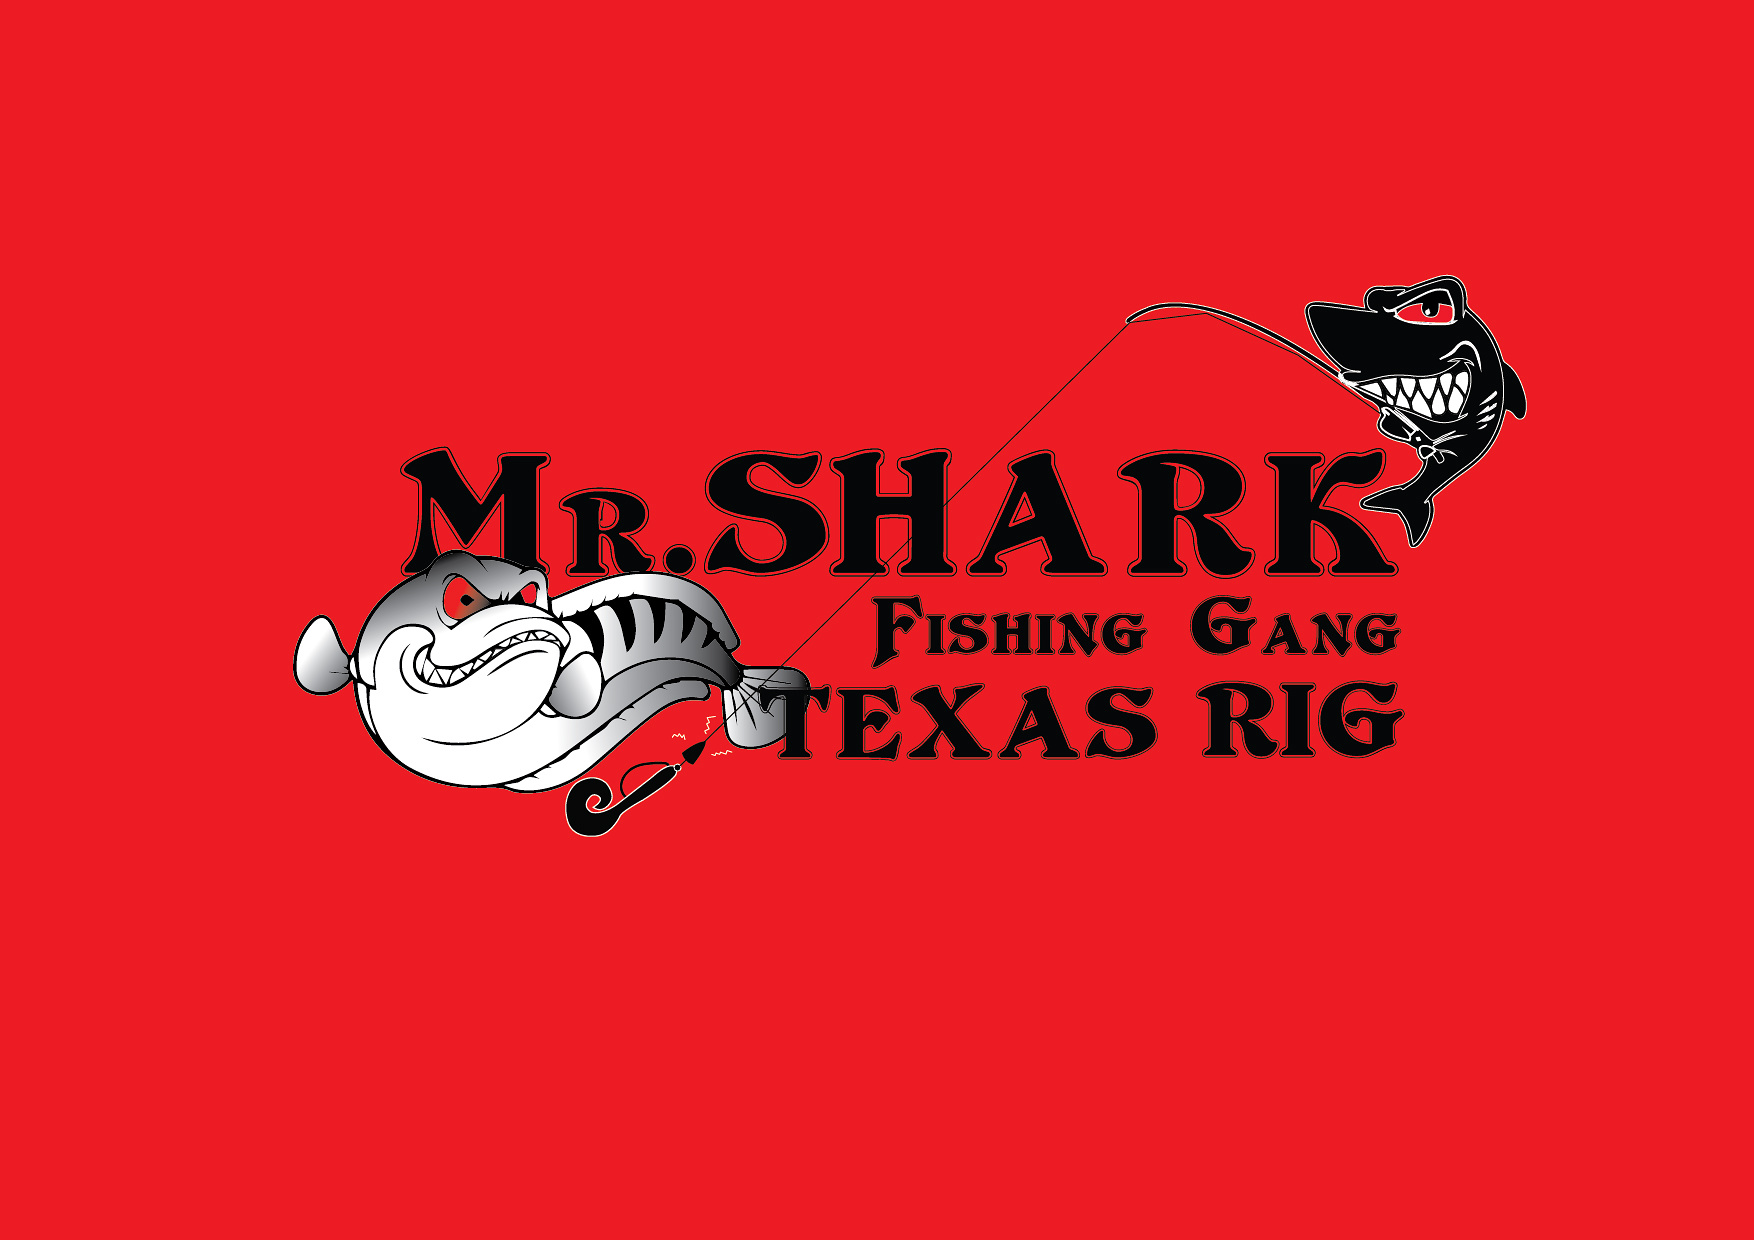 เทคนิคการตกปลาช่อนวังกุ้ง ด้วย Texas Rig